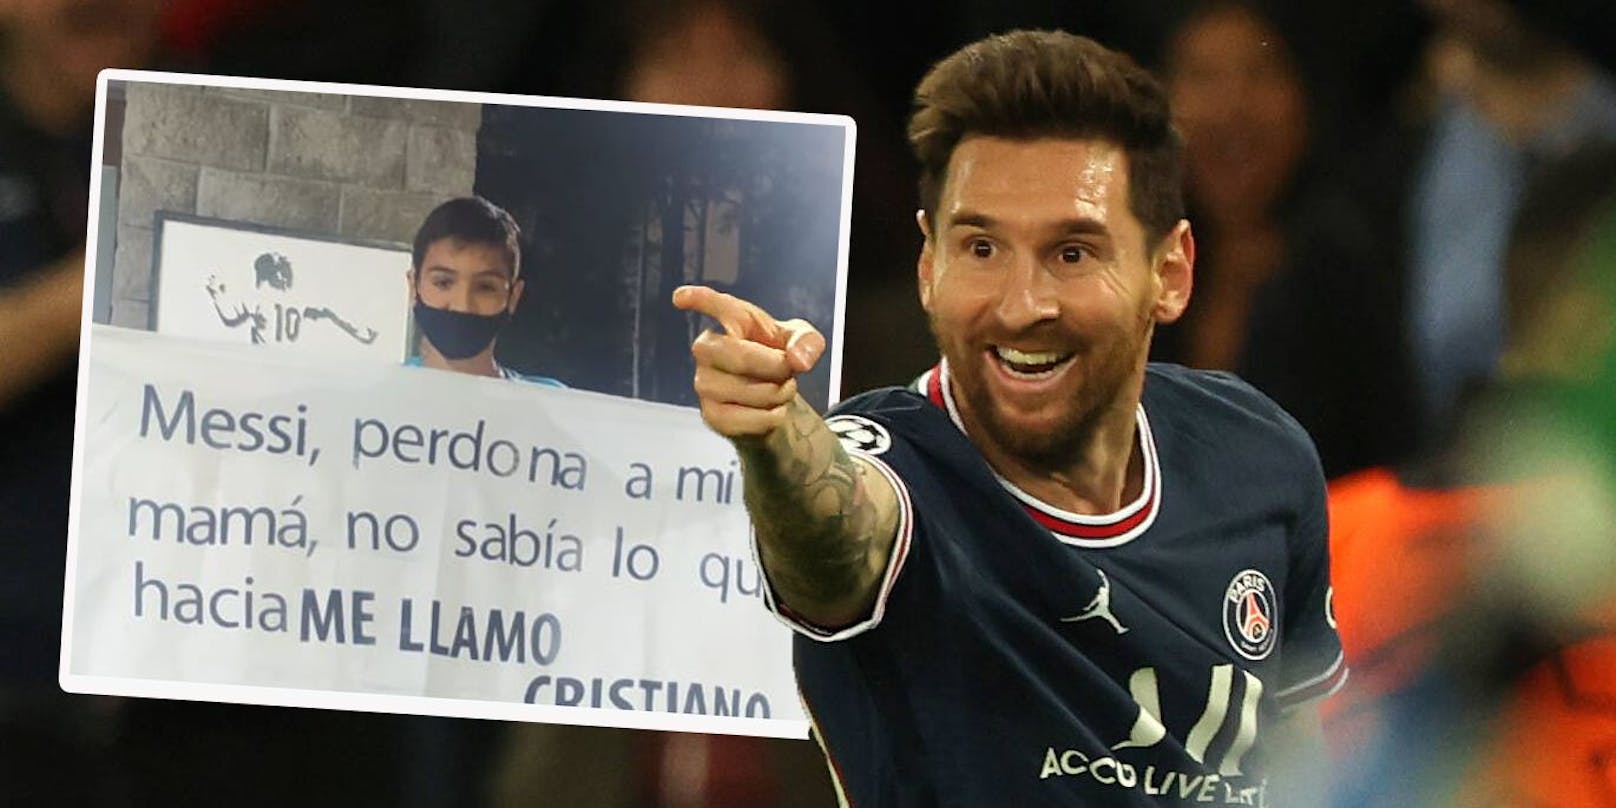 Ein kleiner Fan entschuldigt sich bei Lionel Messi für seinen Namen Cristiano.